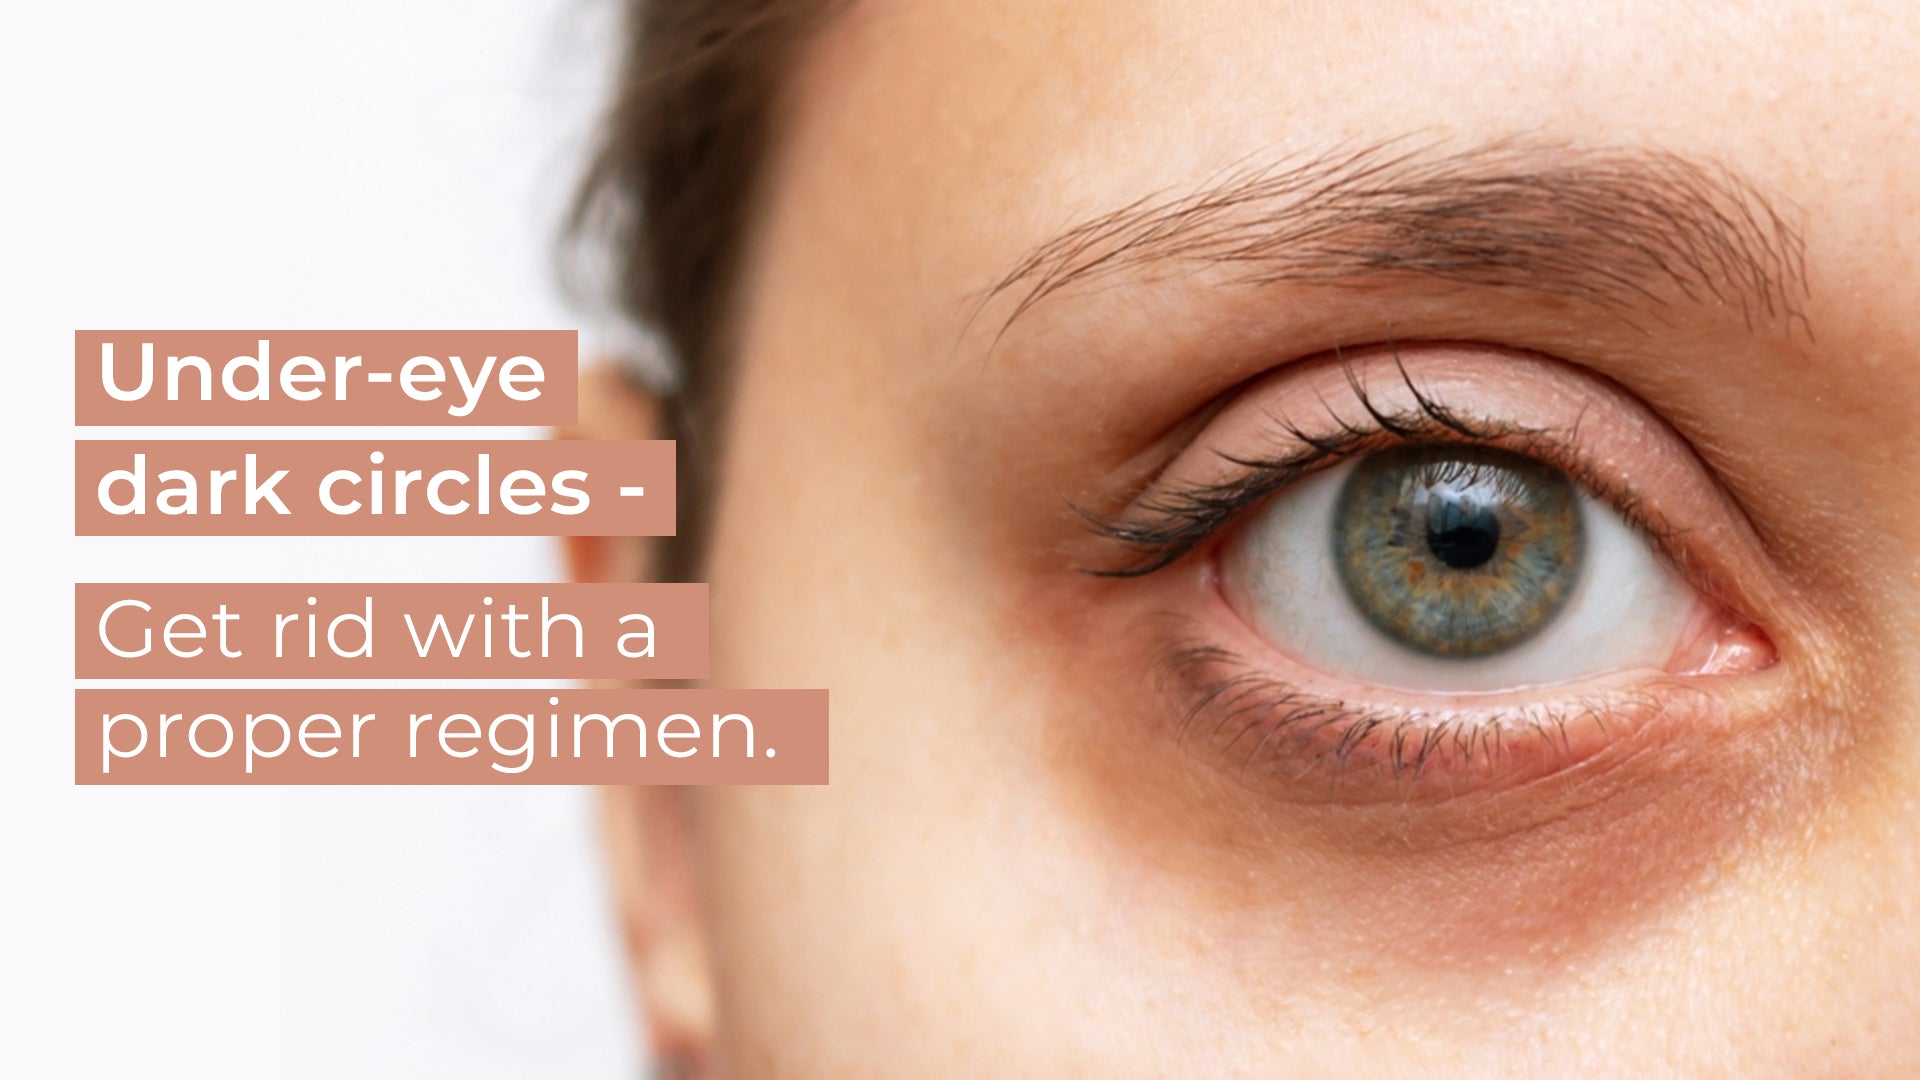 Under-eye dark circles - Get rid with a proper regimen